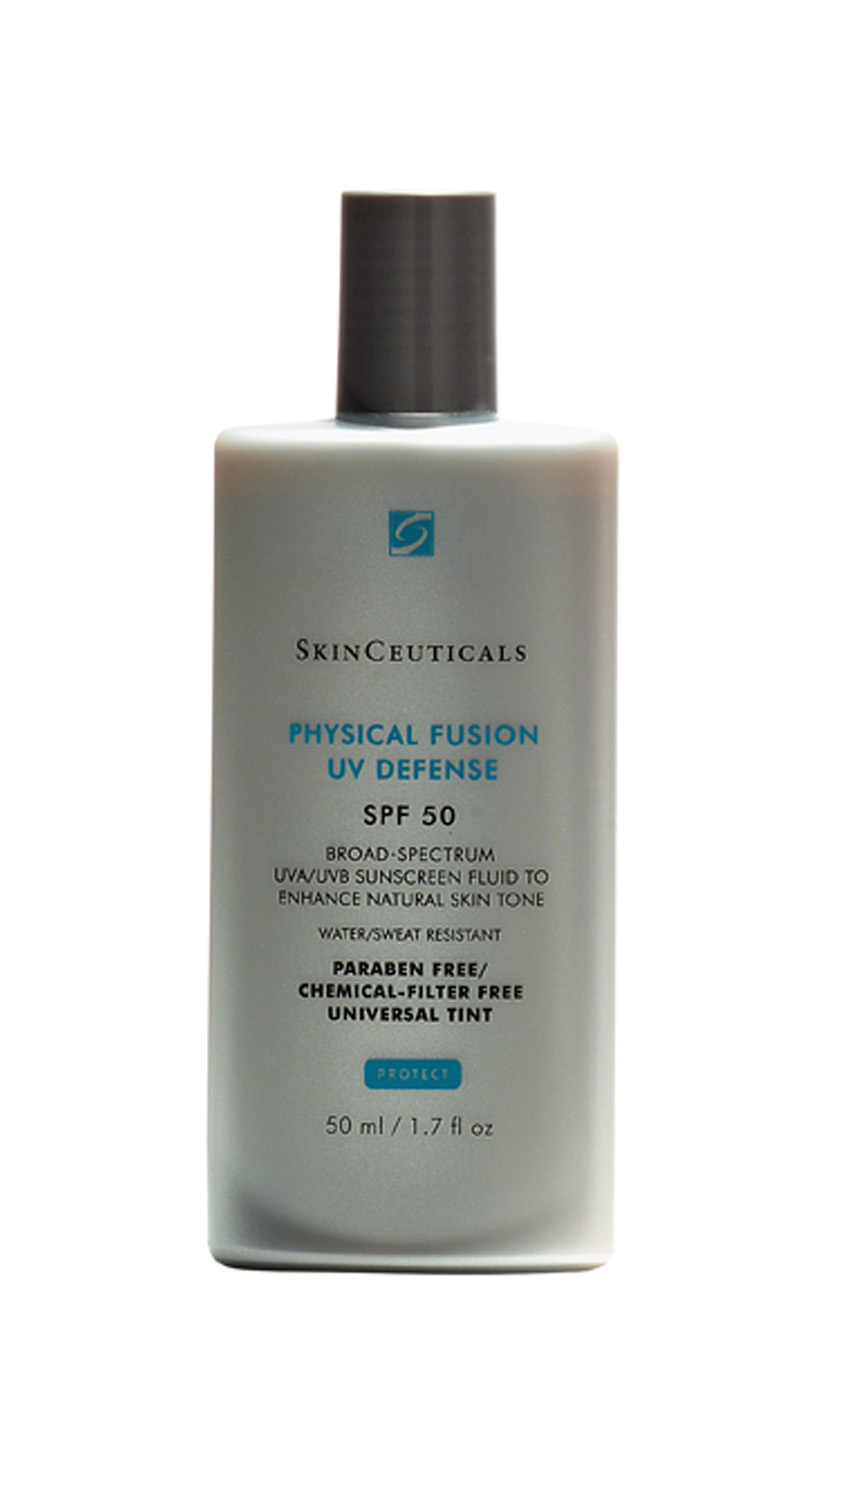 Physical Fusion UV Defense FPS 50, R$ 89: ideal para peles sensibilizadas por tratamentos estéticos como peelings, laser e ácidos. SkinCeuticals 0800-7017371